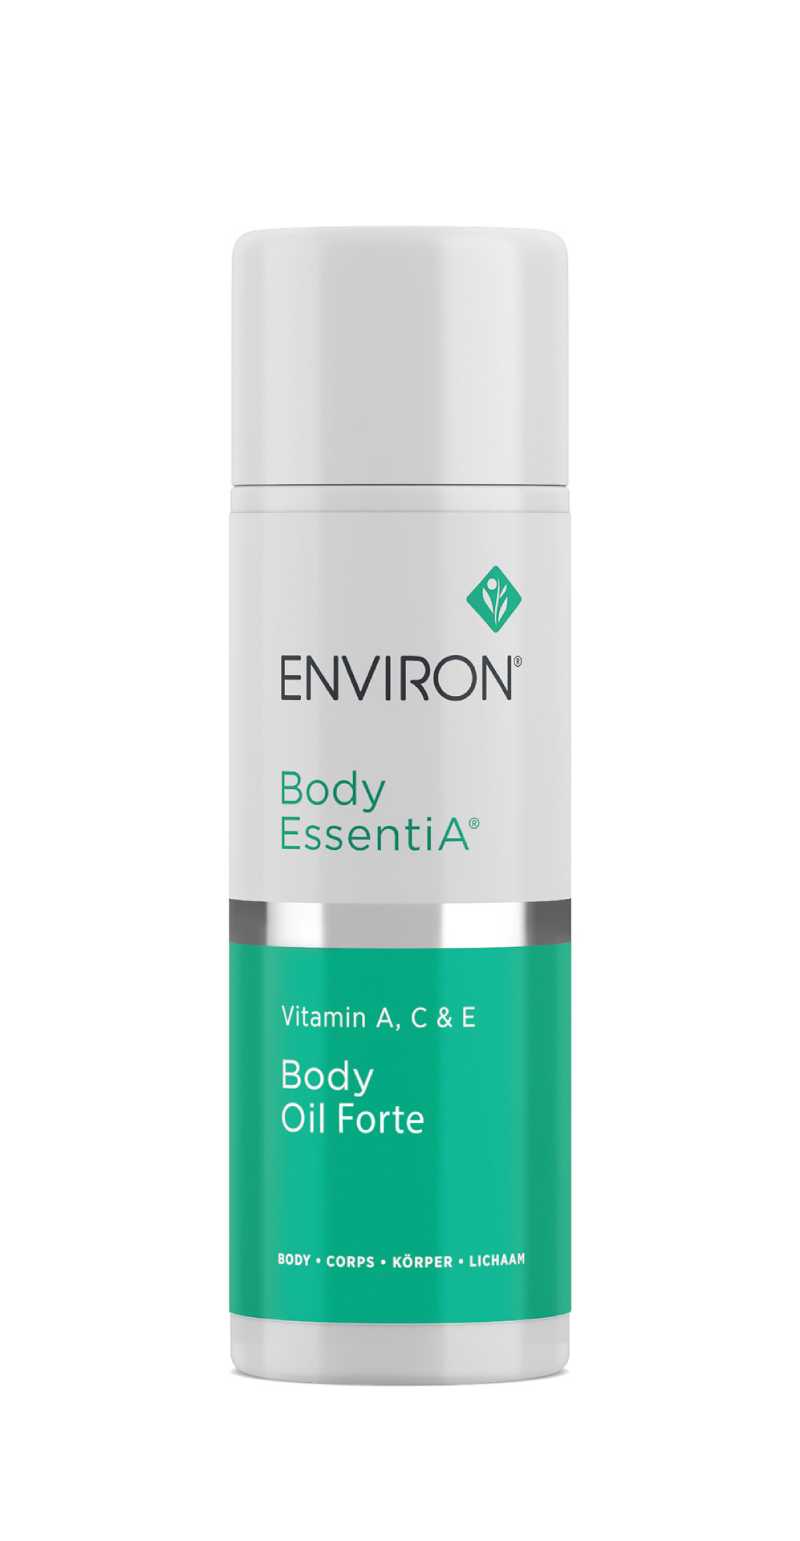 Body EssentiA | Vitamin A, C & E Body Oil Forte